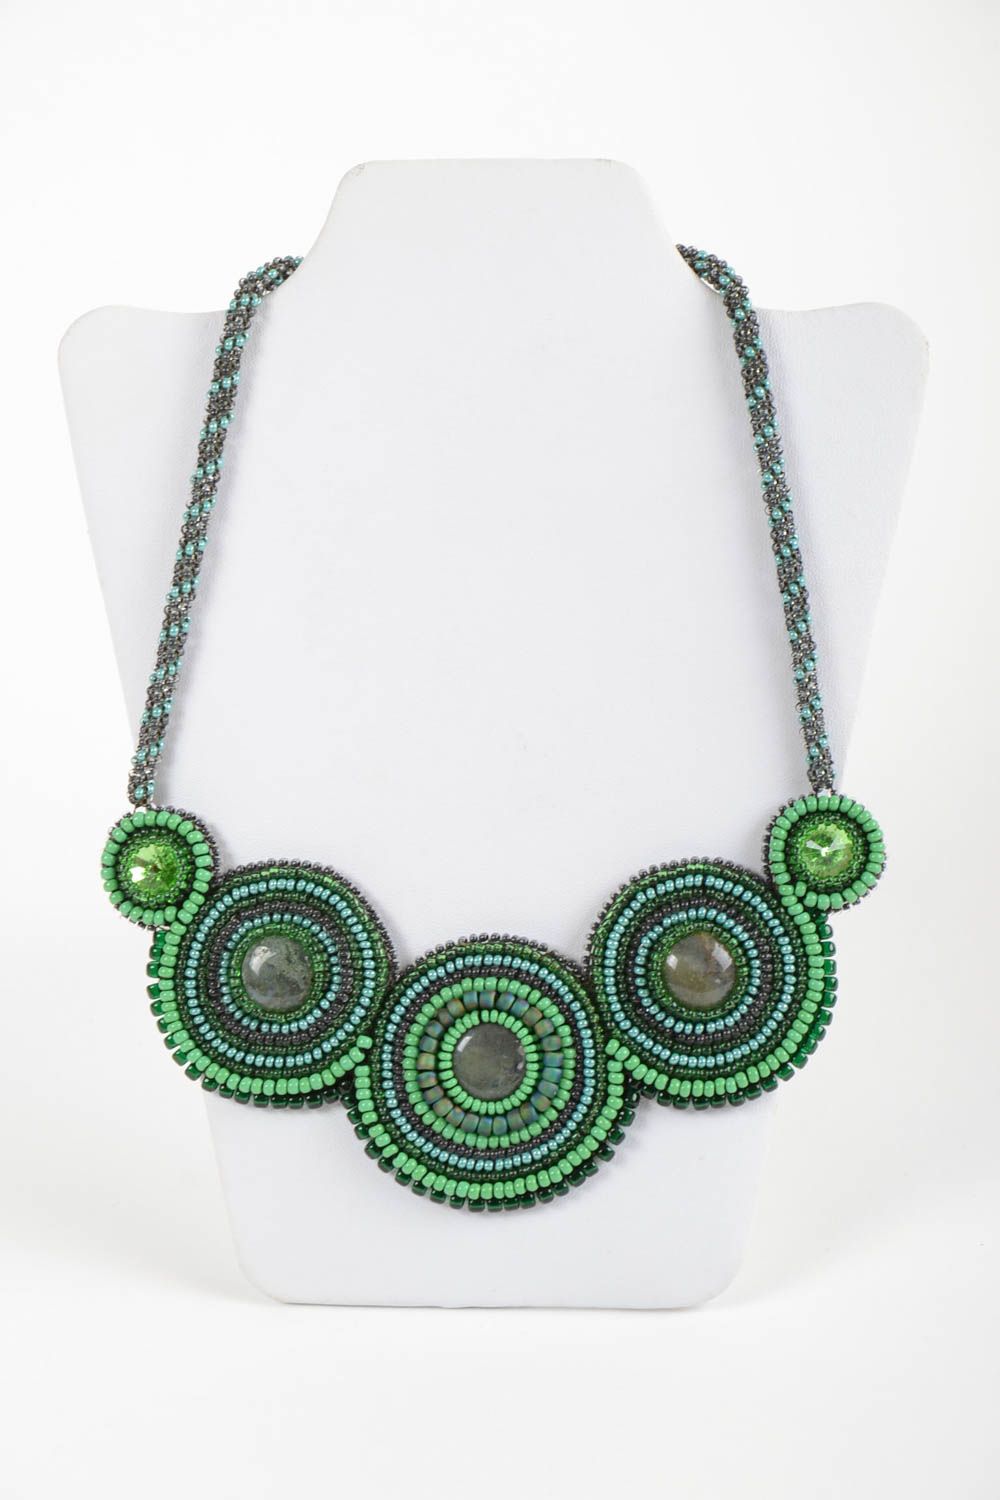 Ожерелье из бисера и натуральных камней на коже ручной работы в зеленых тонах фото 2